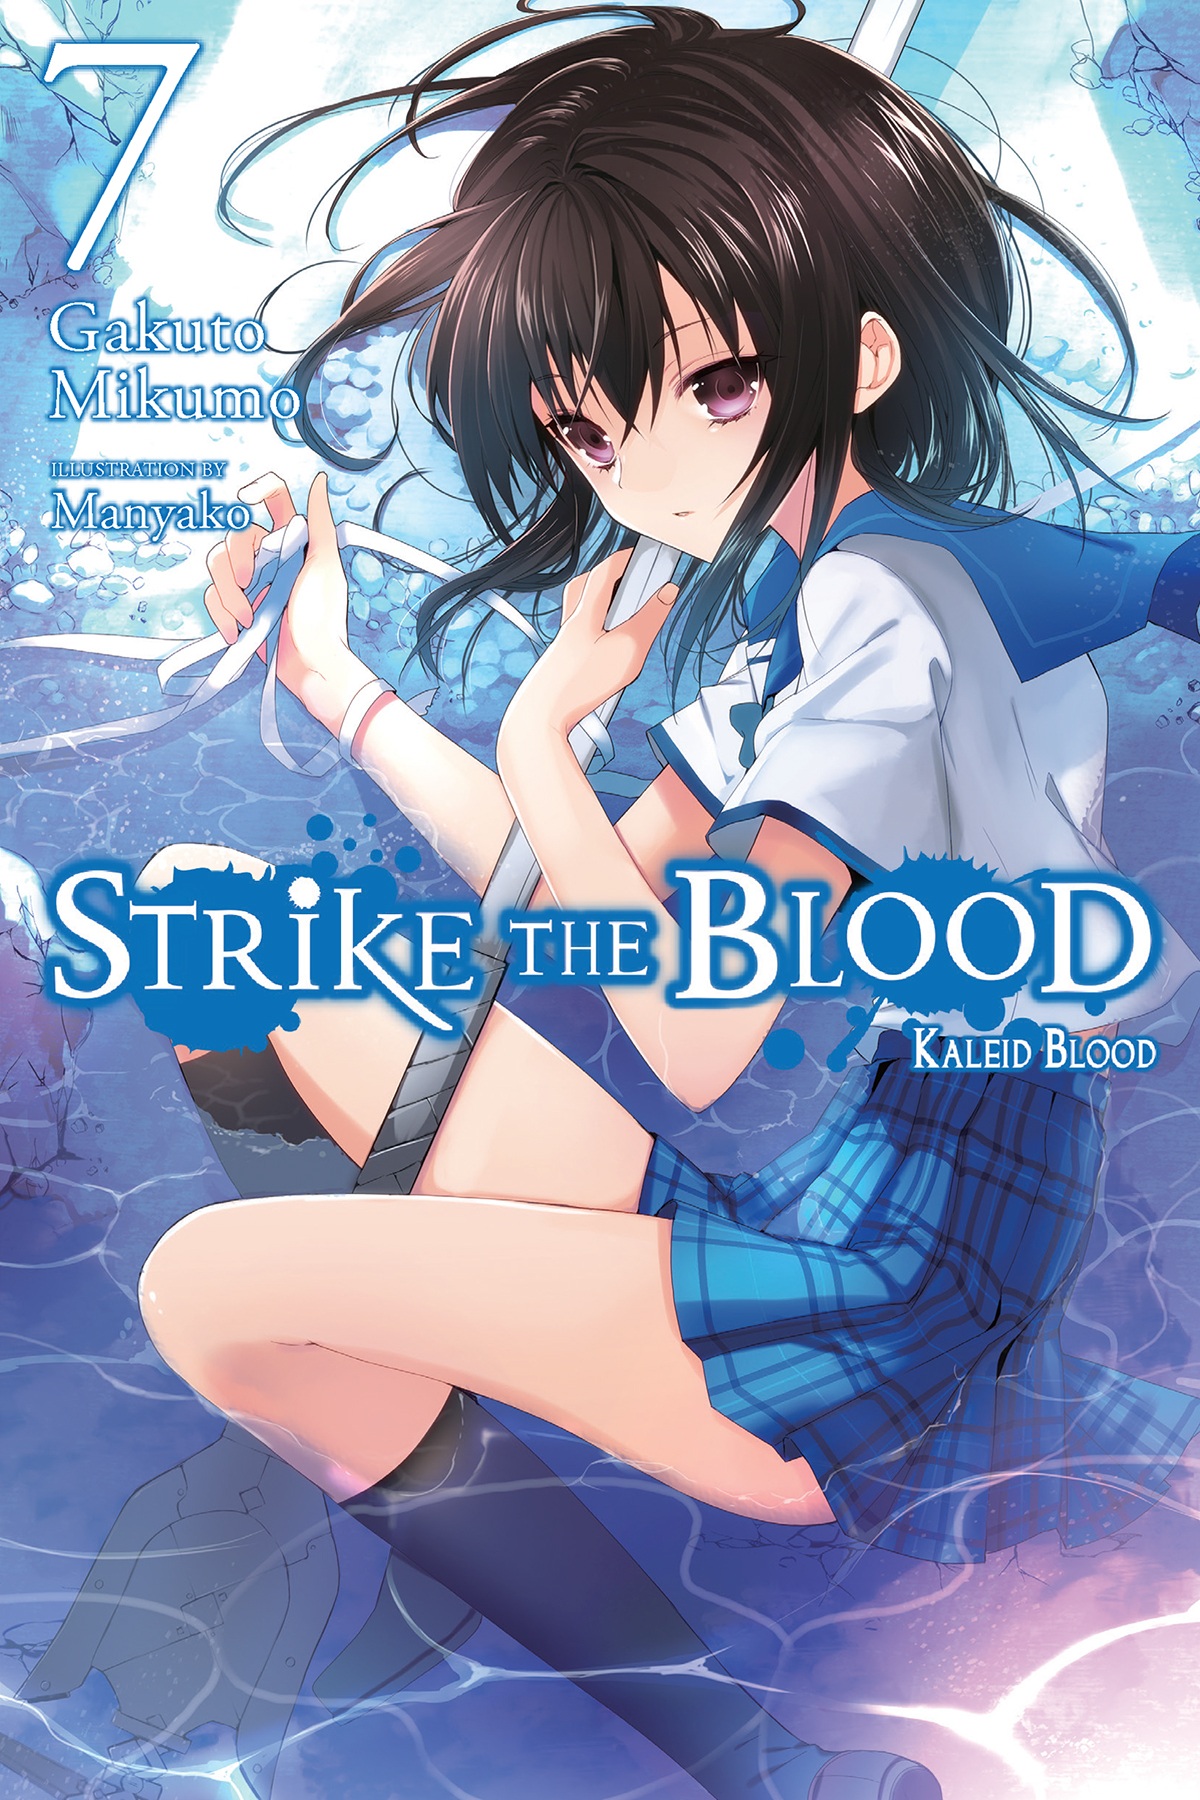 Strike the Blood, Vol. 4 - manga (Strike the Blood (manga), 4)